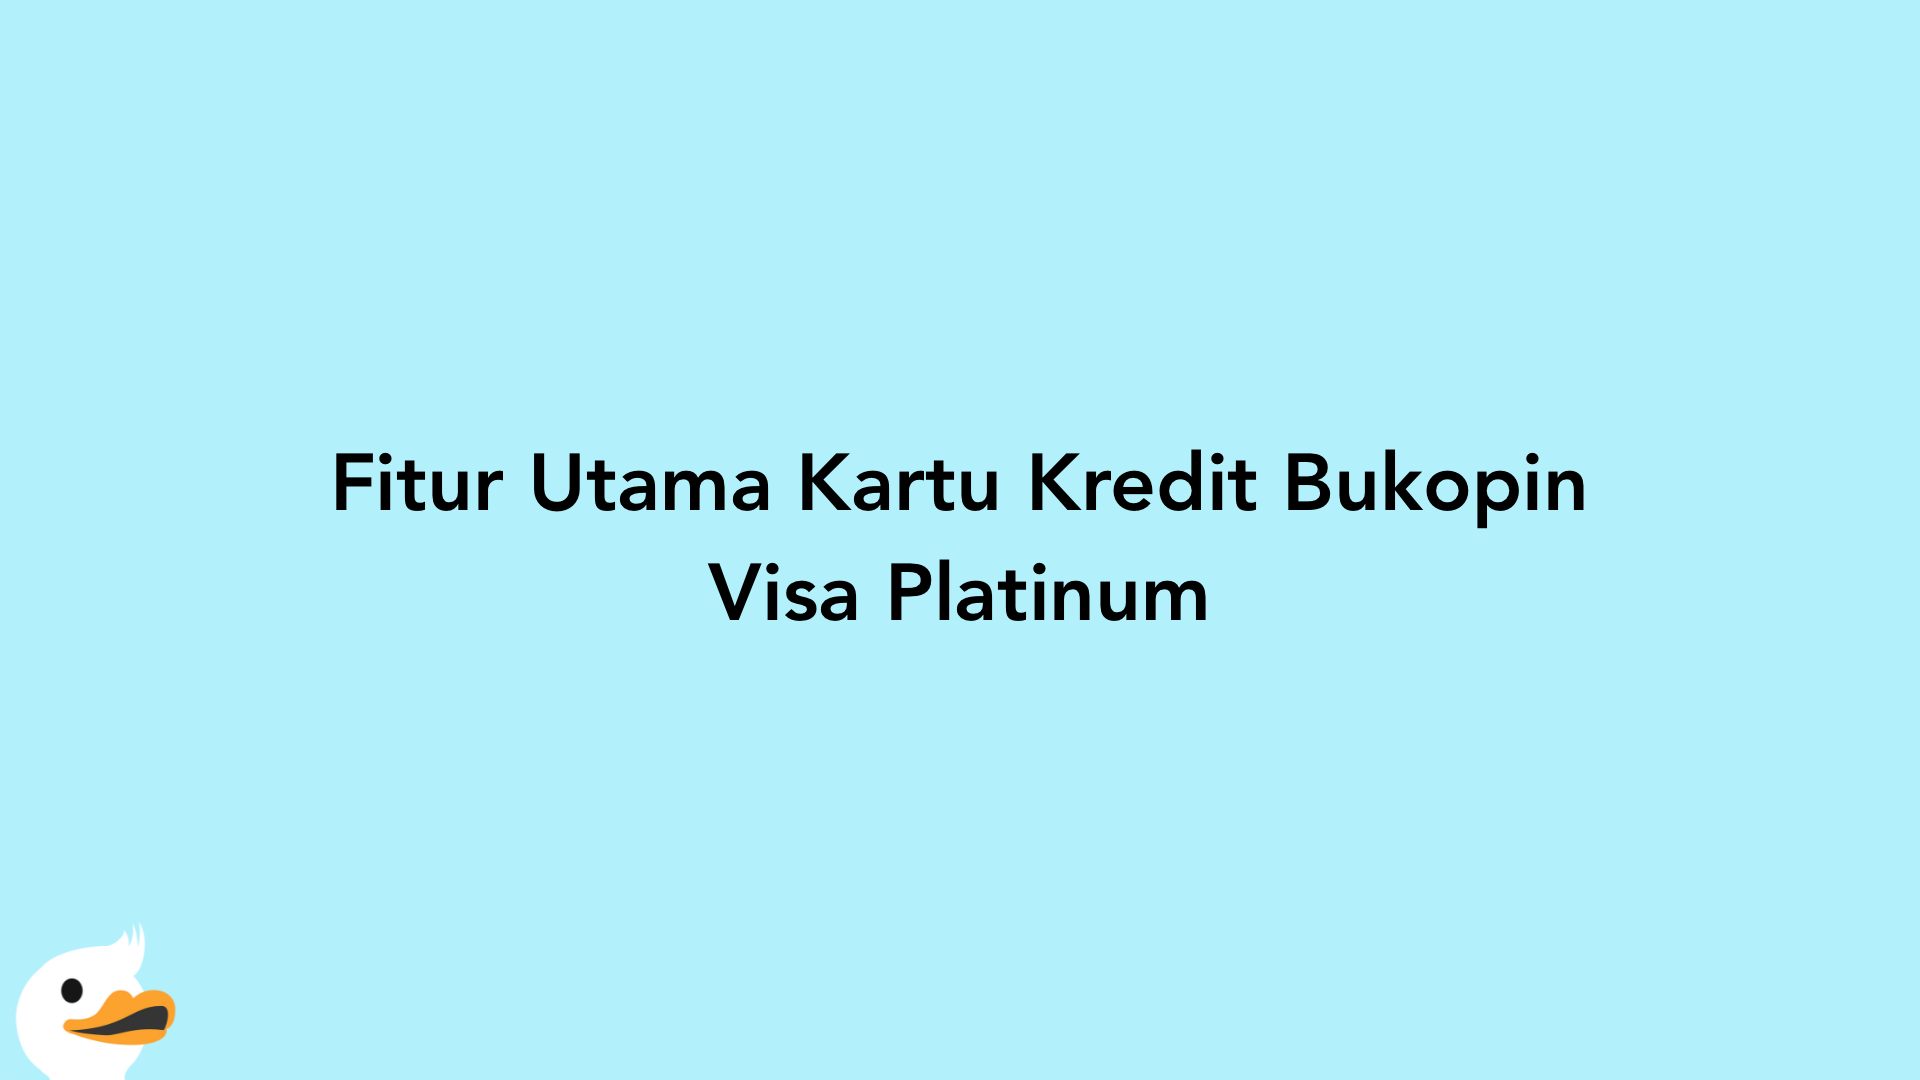 Fitur Utama Kartu Kredit Bukopin Visa Platinum